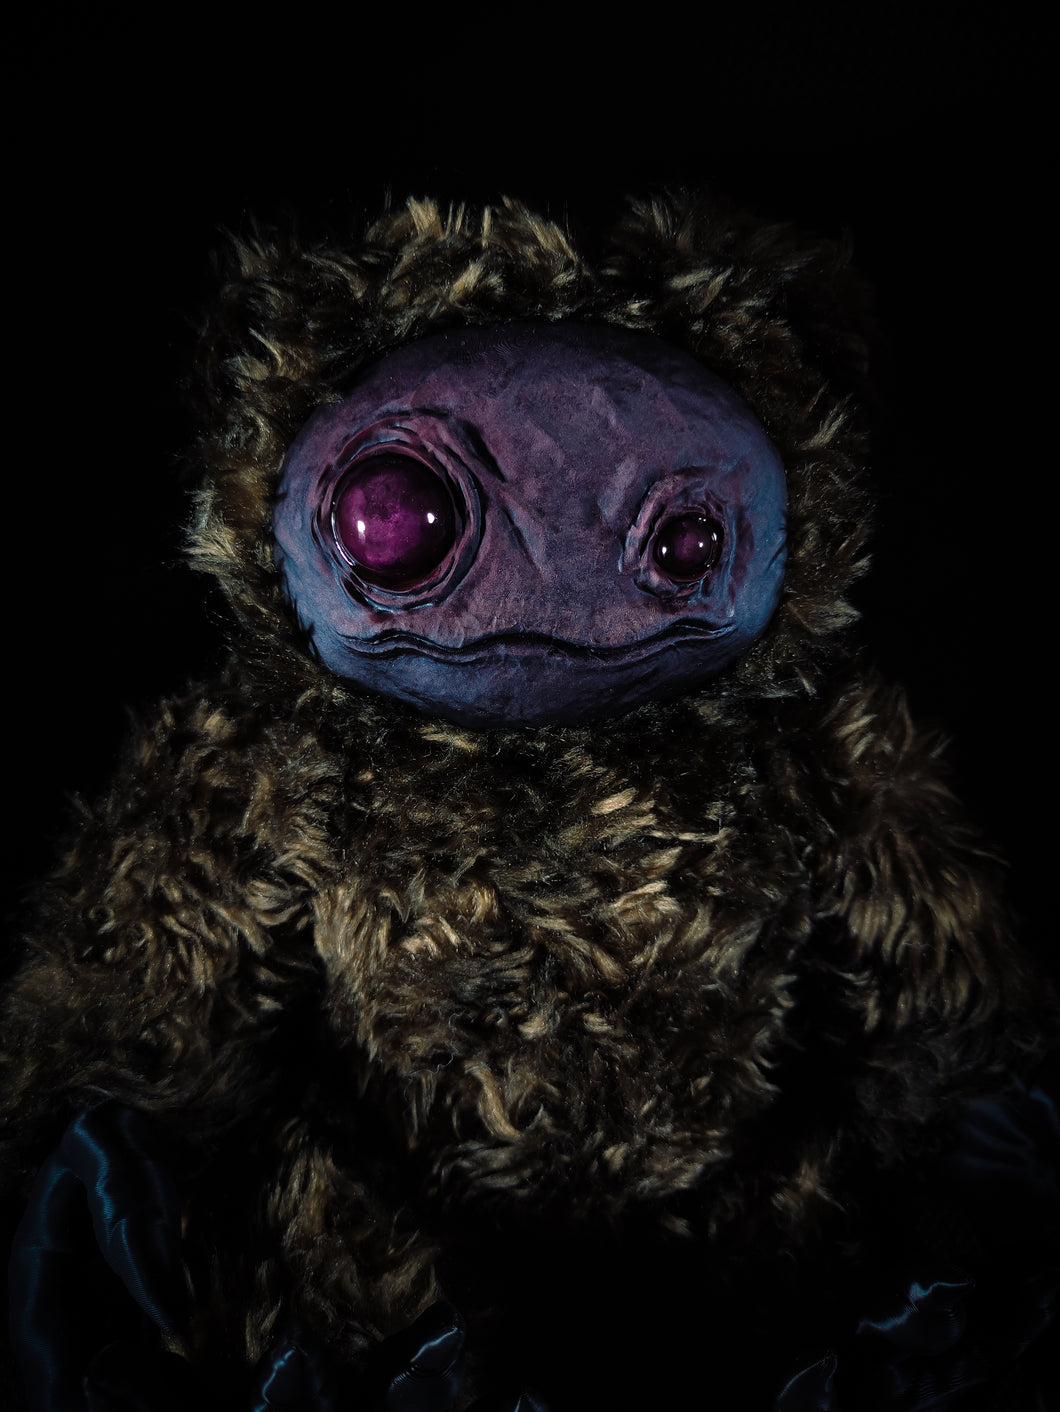 ZIPPO: Rhinestone Eyes Ver. - Monster Art Doll Plush Toy